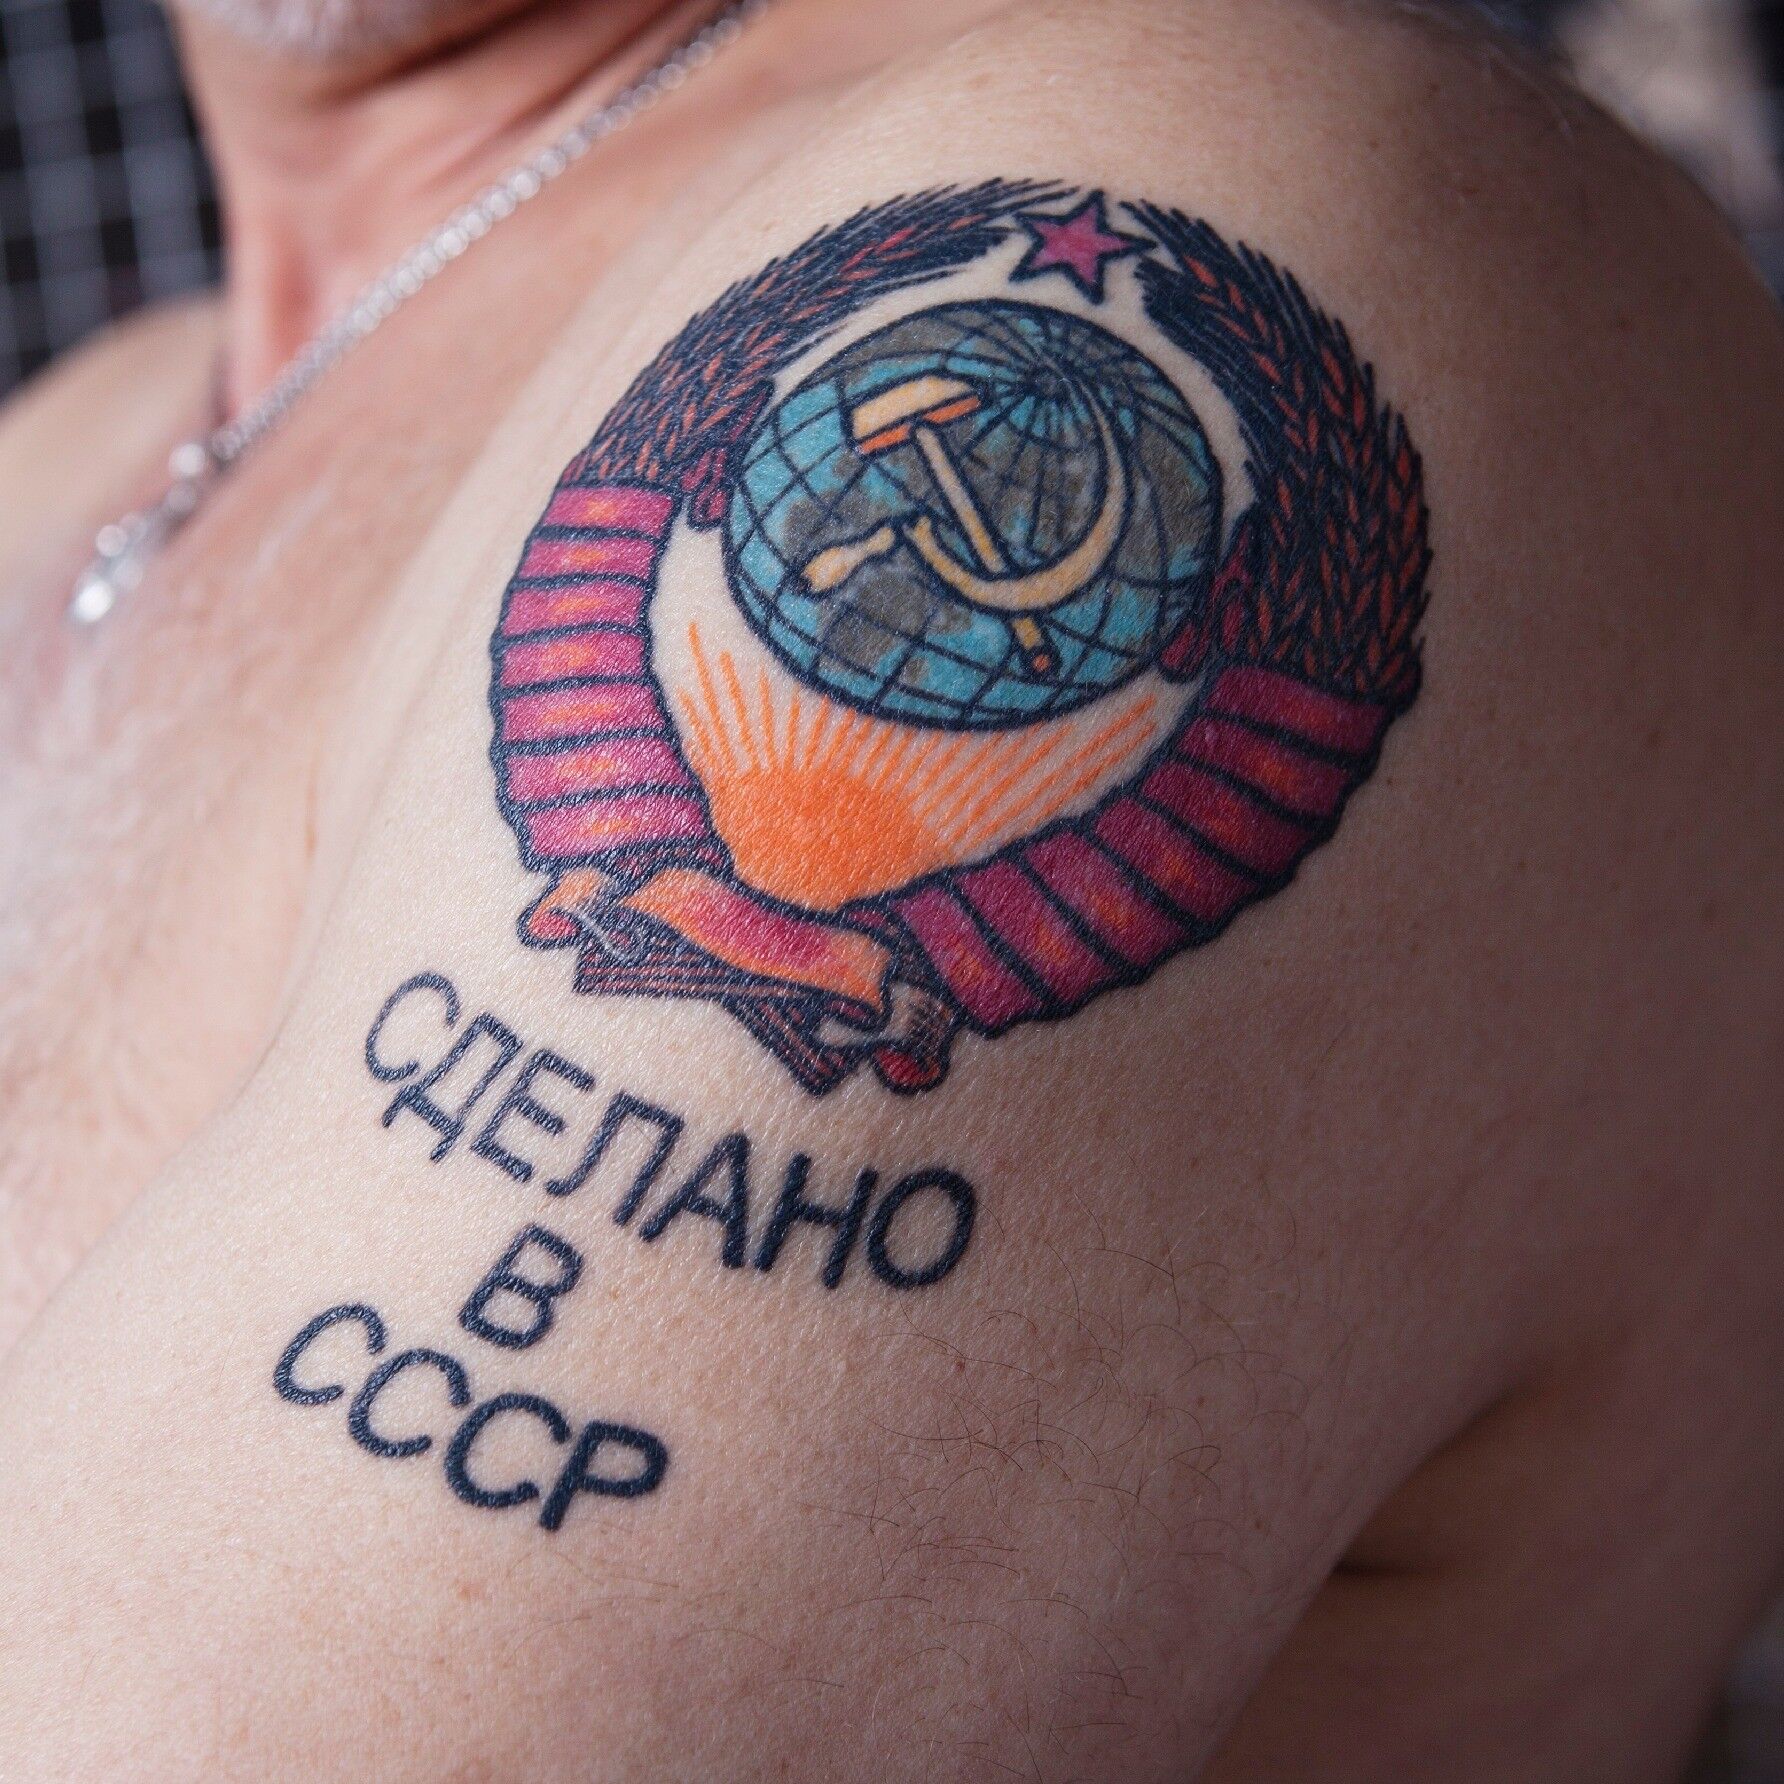 Татуировка "Сделано в СССР"